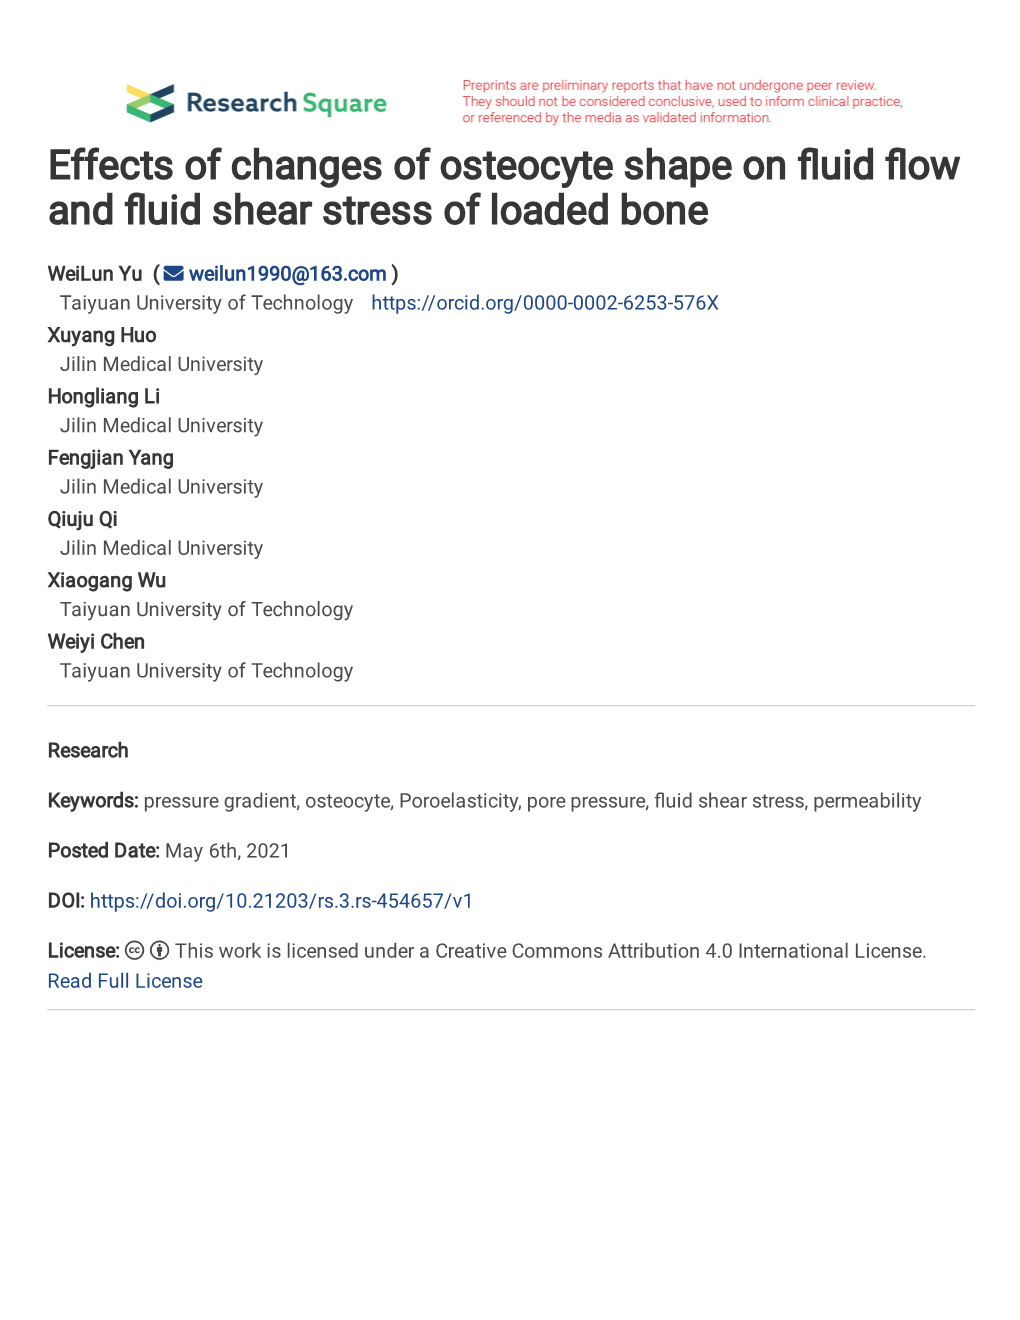 Effects of Changes of Osteocyte Shape on Fluid Flow and Fluid Shear Stress of Loaded Bone Yu Weilun1*; Huo Xuyang1*; Li Hongliang1; Yang Fengjian1; Qi Qiuju1; Wu